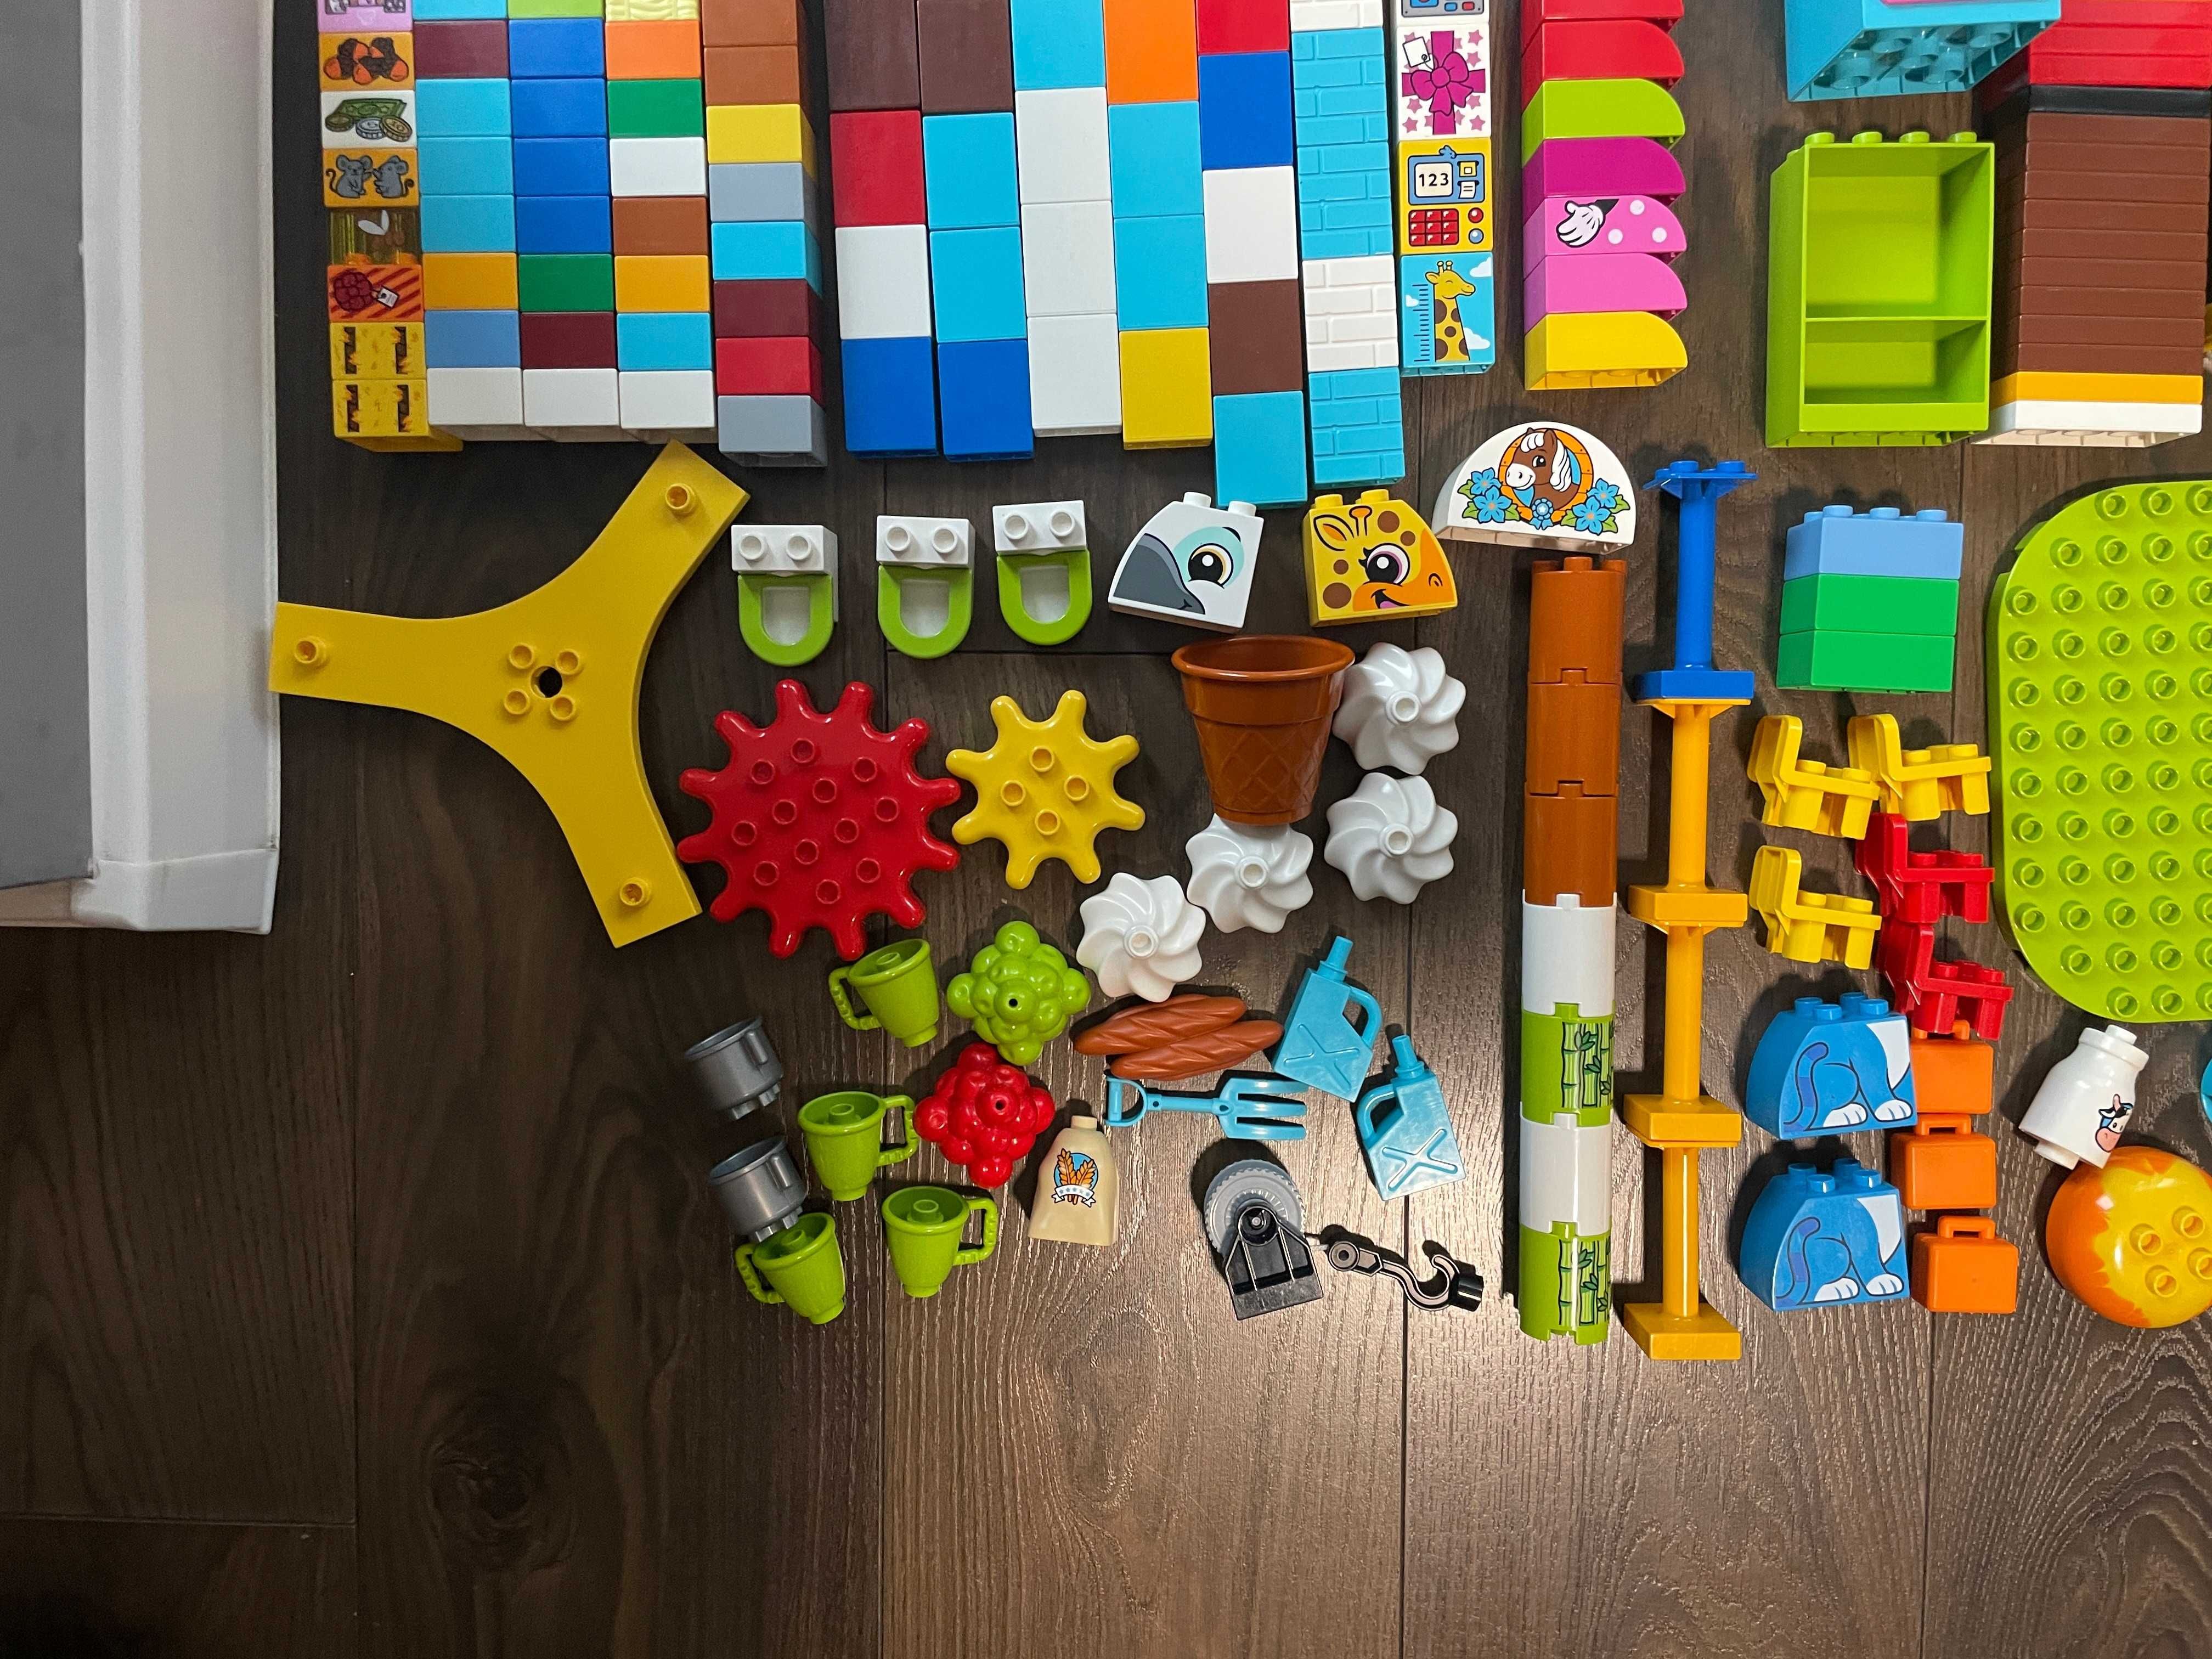 Klocki LEGO DUPLO - około 12 kg - wiele zestawów